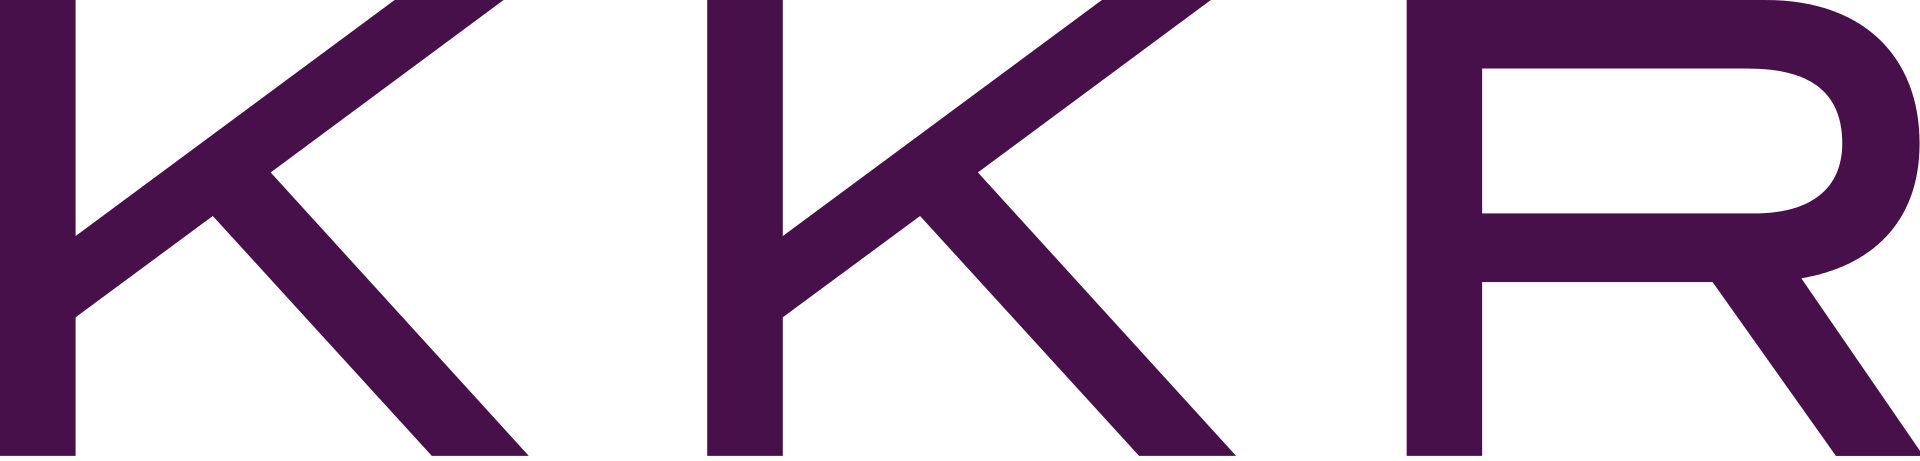 KKR Group Finance